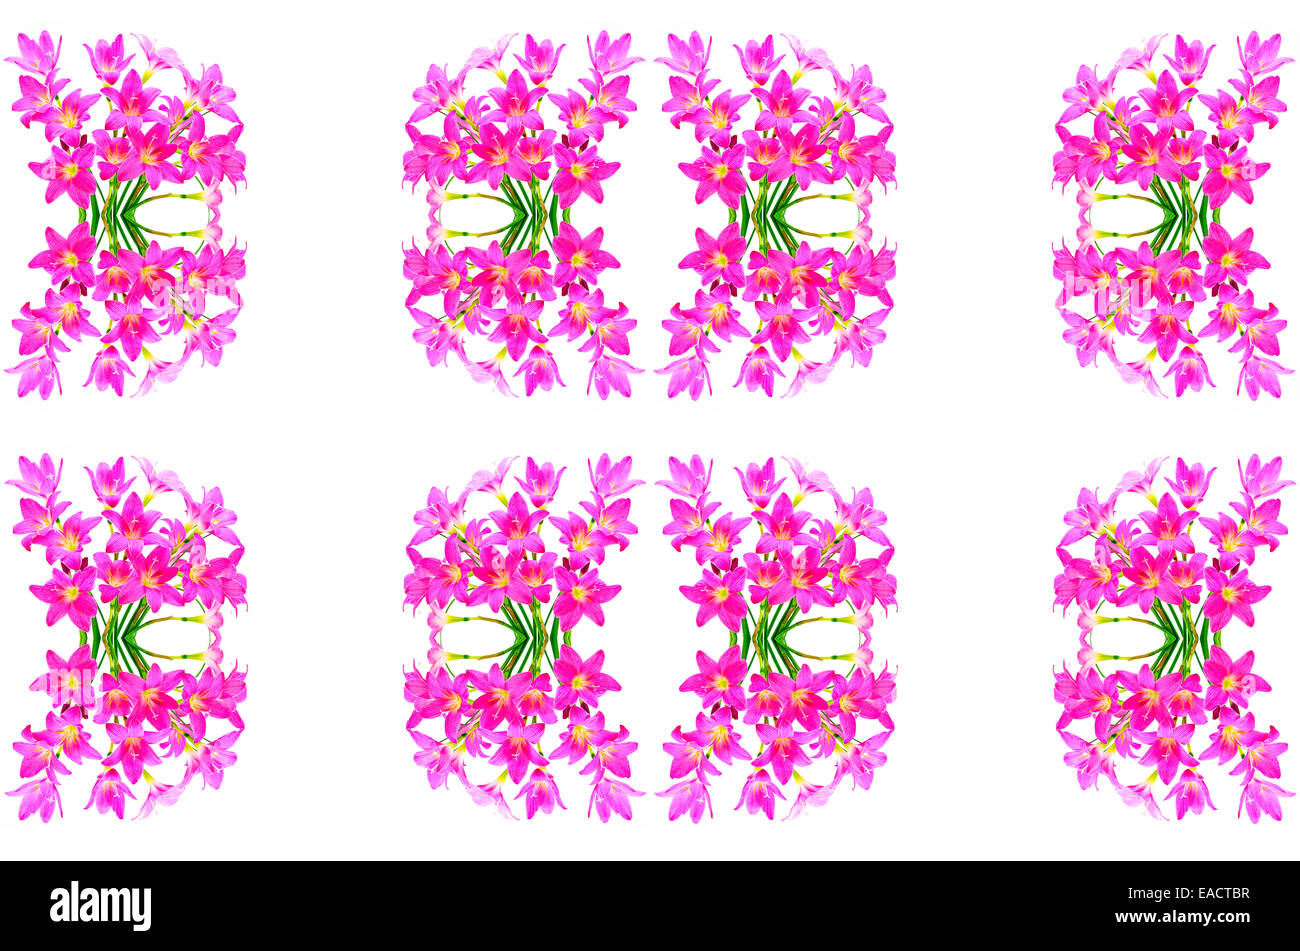 Blüte rosa Zephyranthes Lily, Regen-Lilie, Fairy Lily, kleine Hexen, isoliert auf einem Whtie Hintergrund Stockfoto